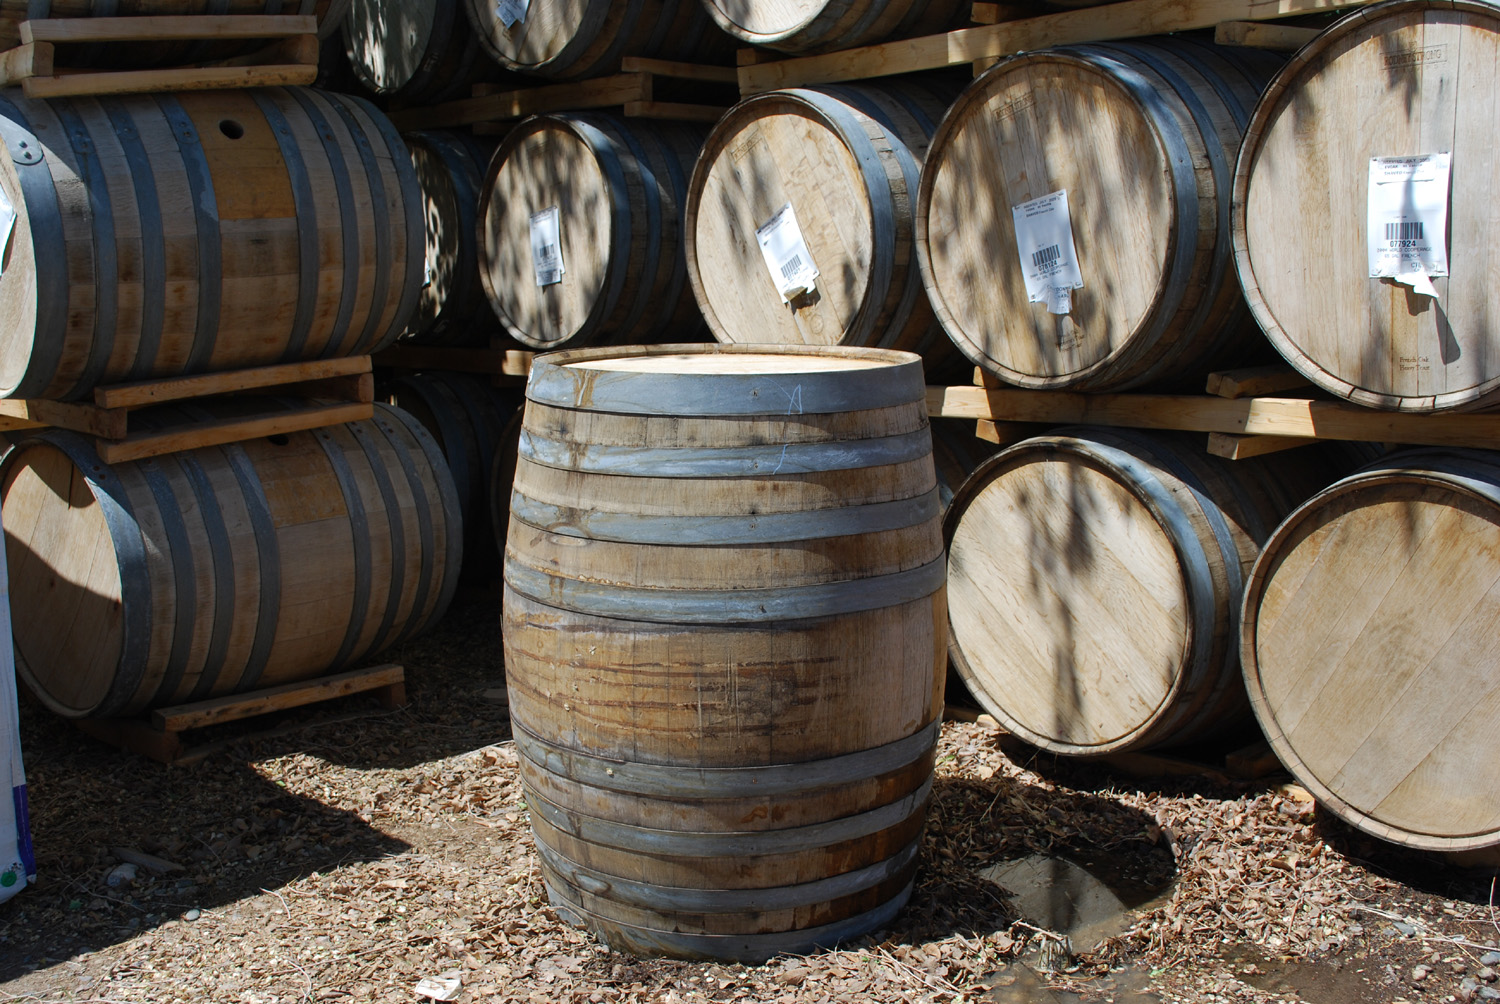 oak wine barrel planter